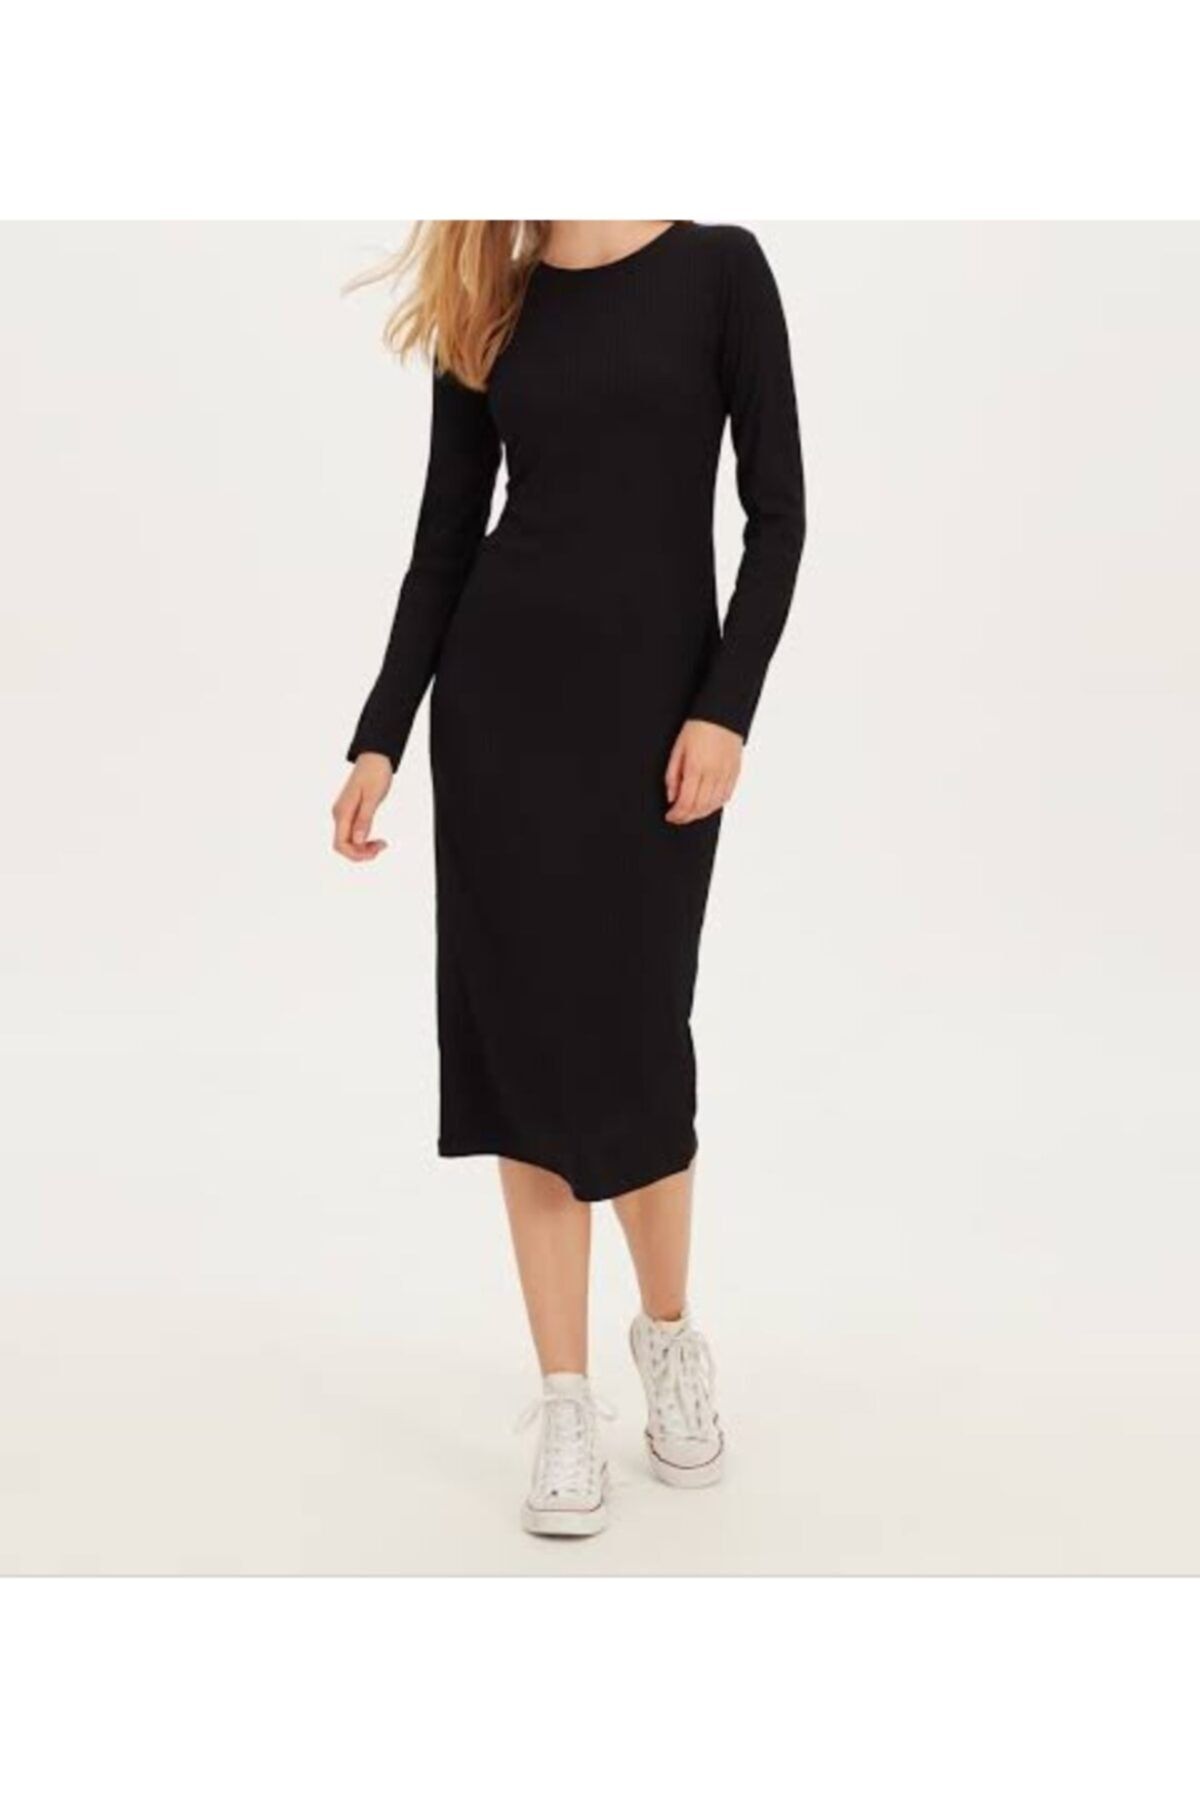 Moda Tekcan Kadın Siyah Diz Altı Kalem Elbise